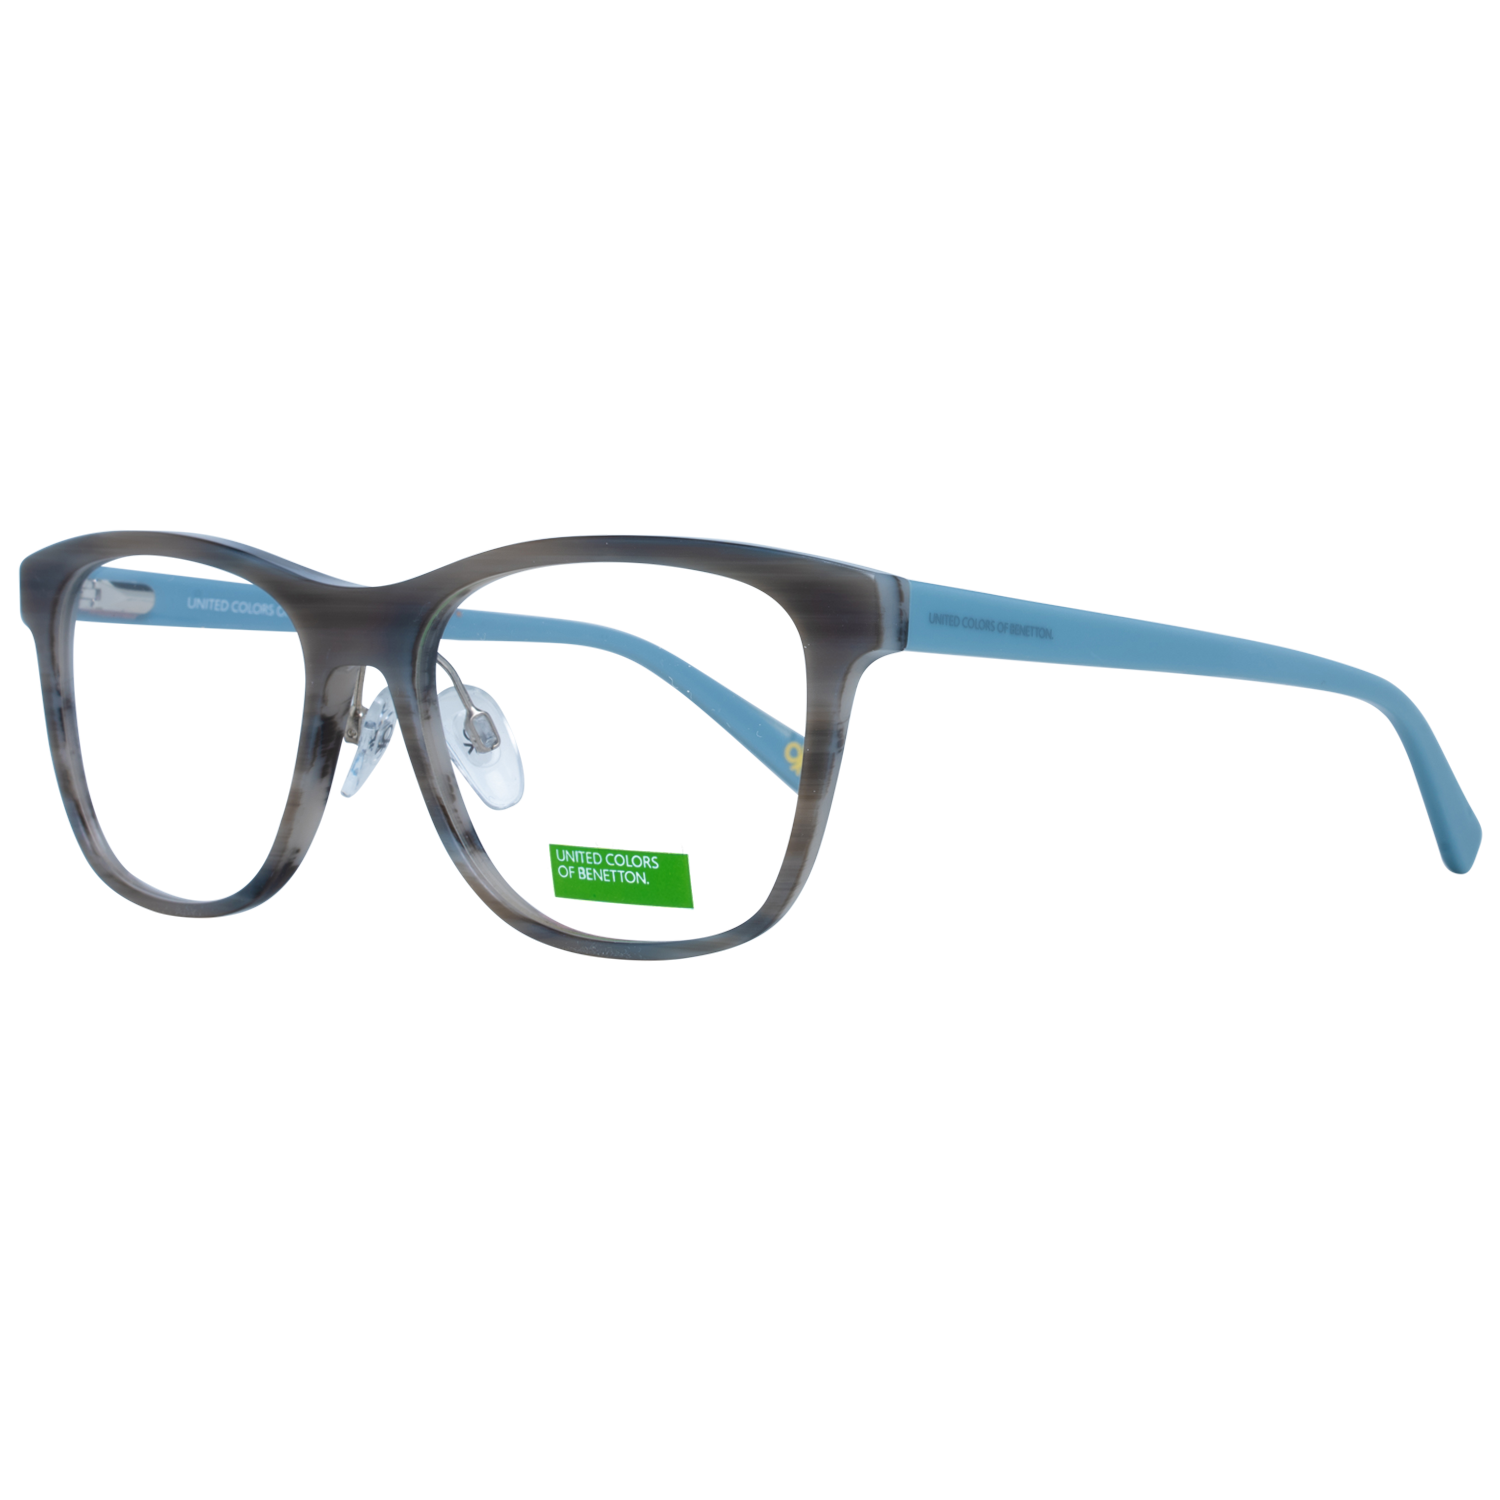 Benetton Frames Benetton Glasses Frames BEO1003 948 54 Eyeglasses Eyewear UK USA Australia 